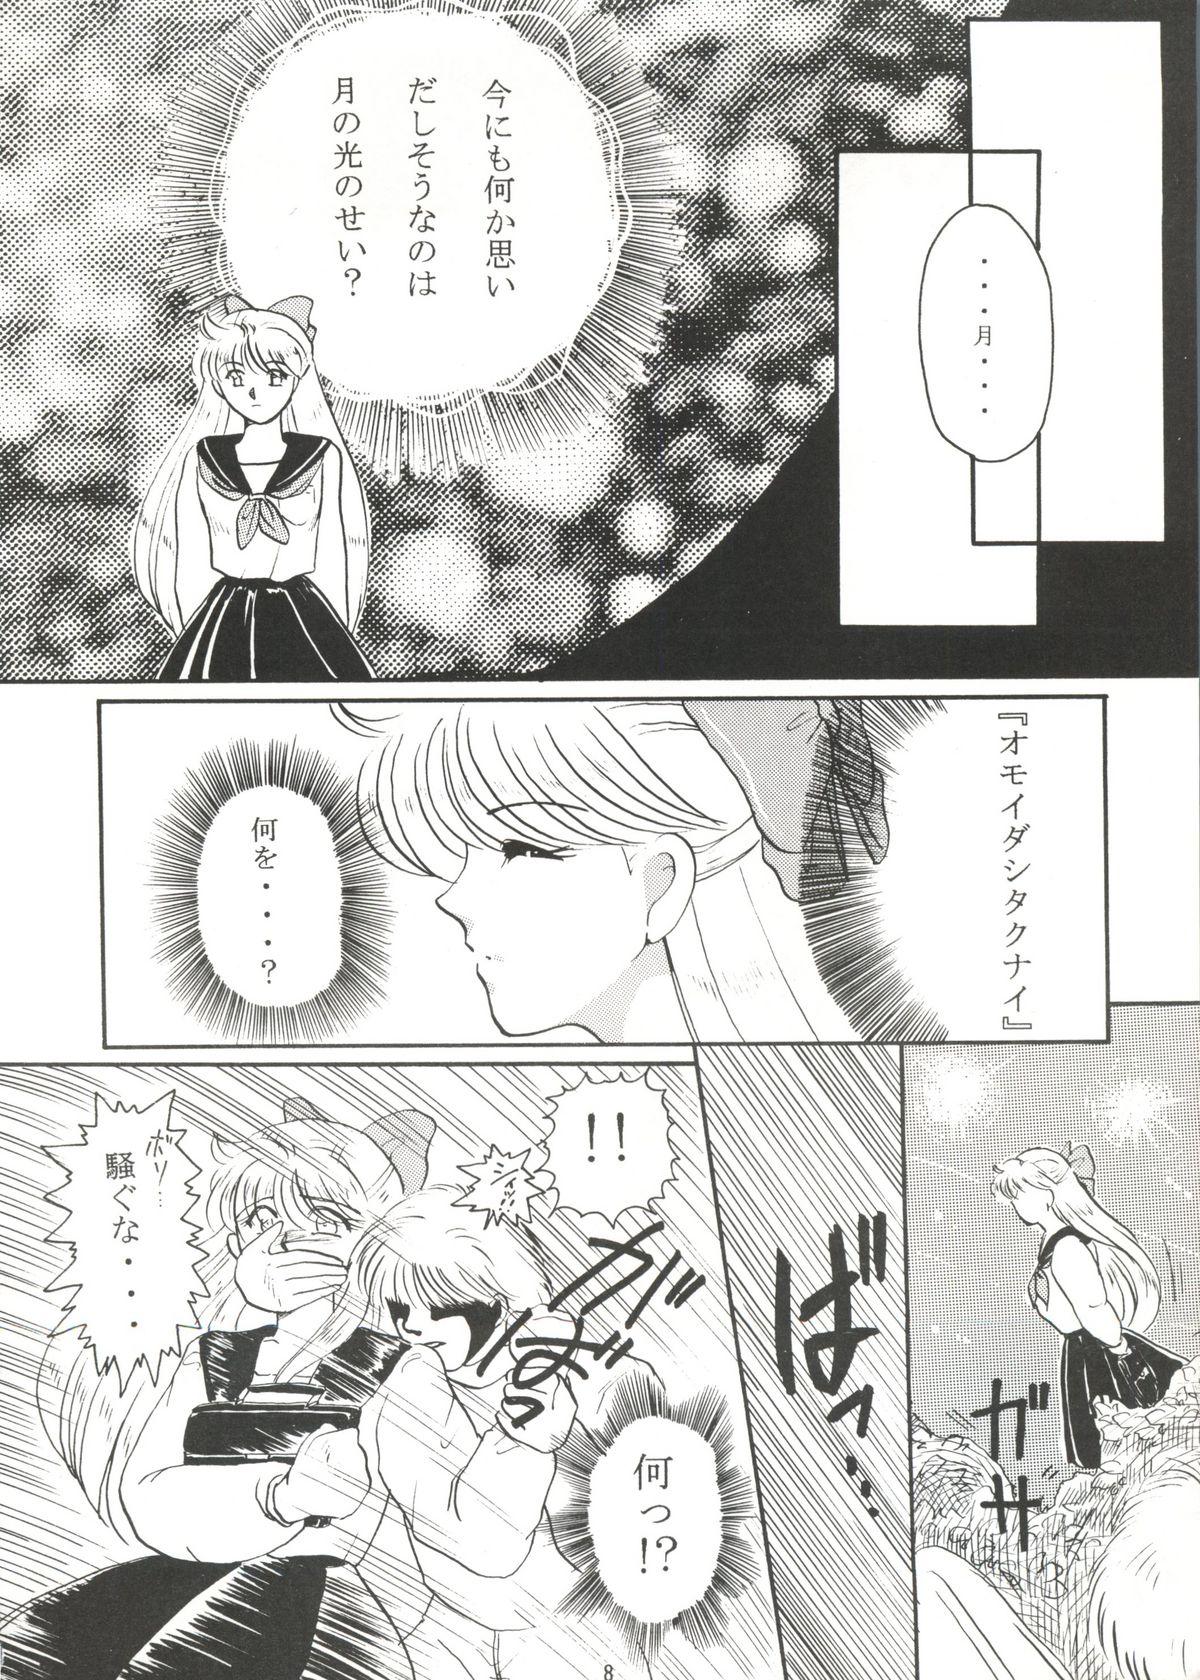 Rola Grandia - Sailor moon Gemidos - Page 7